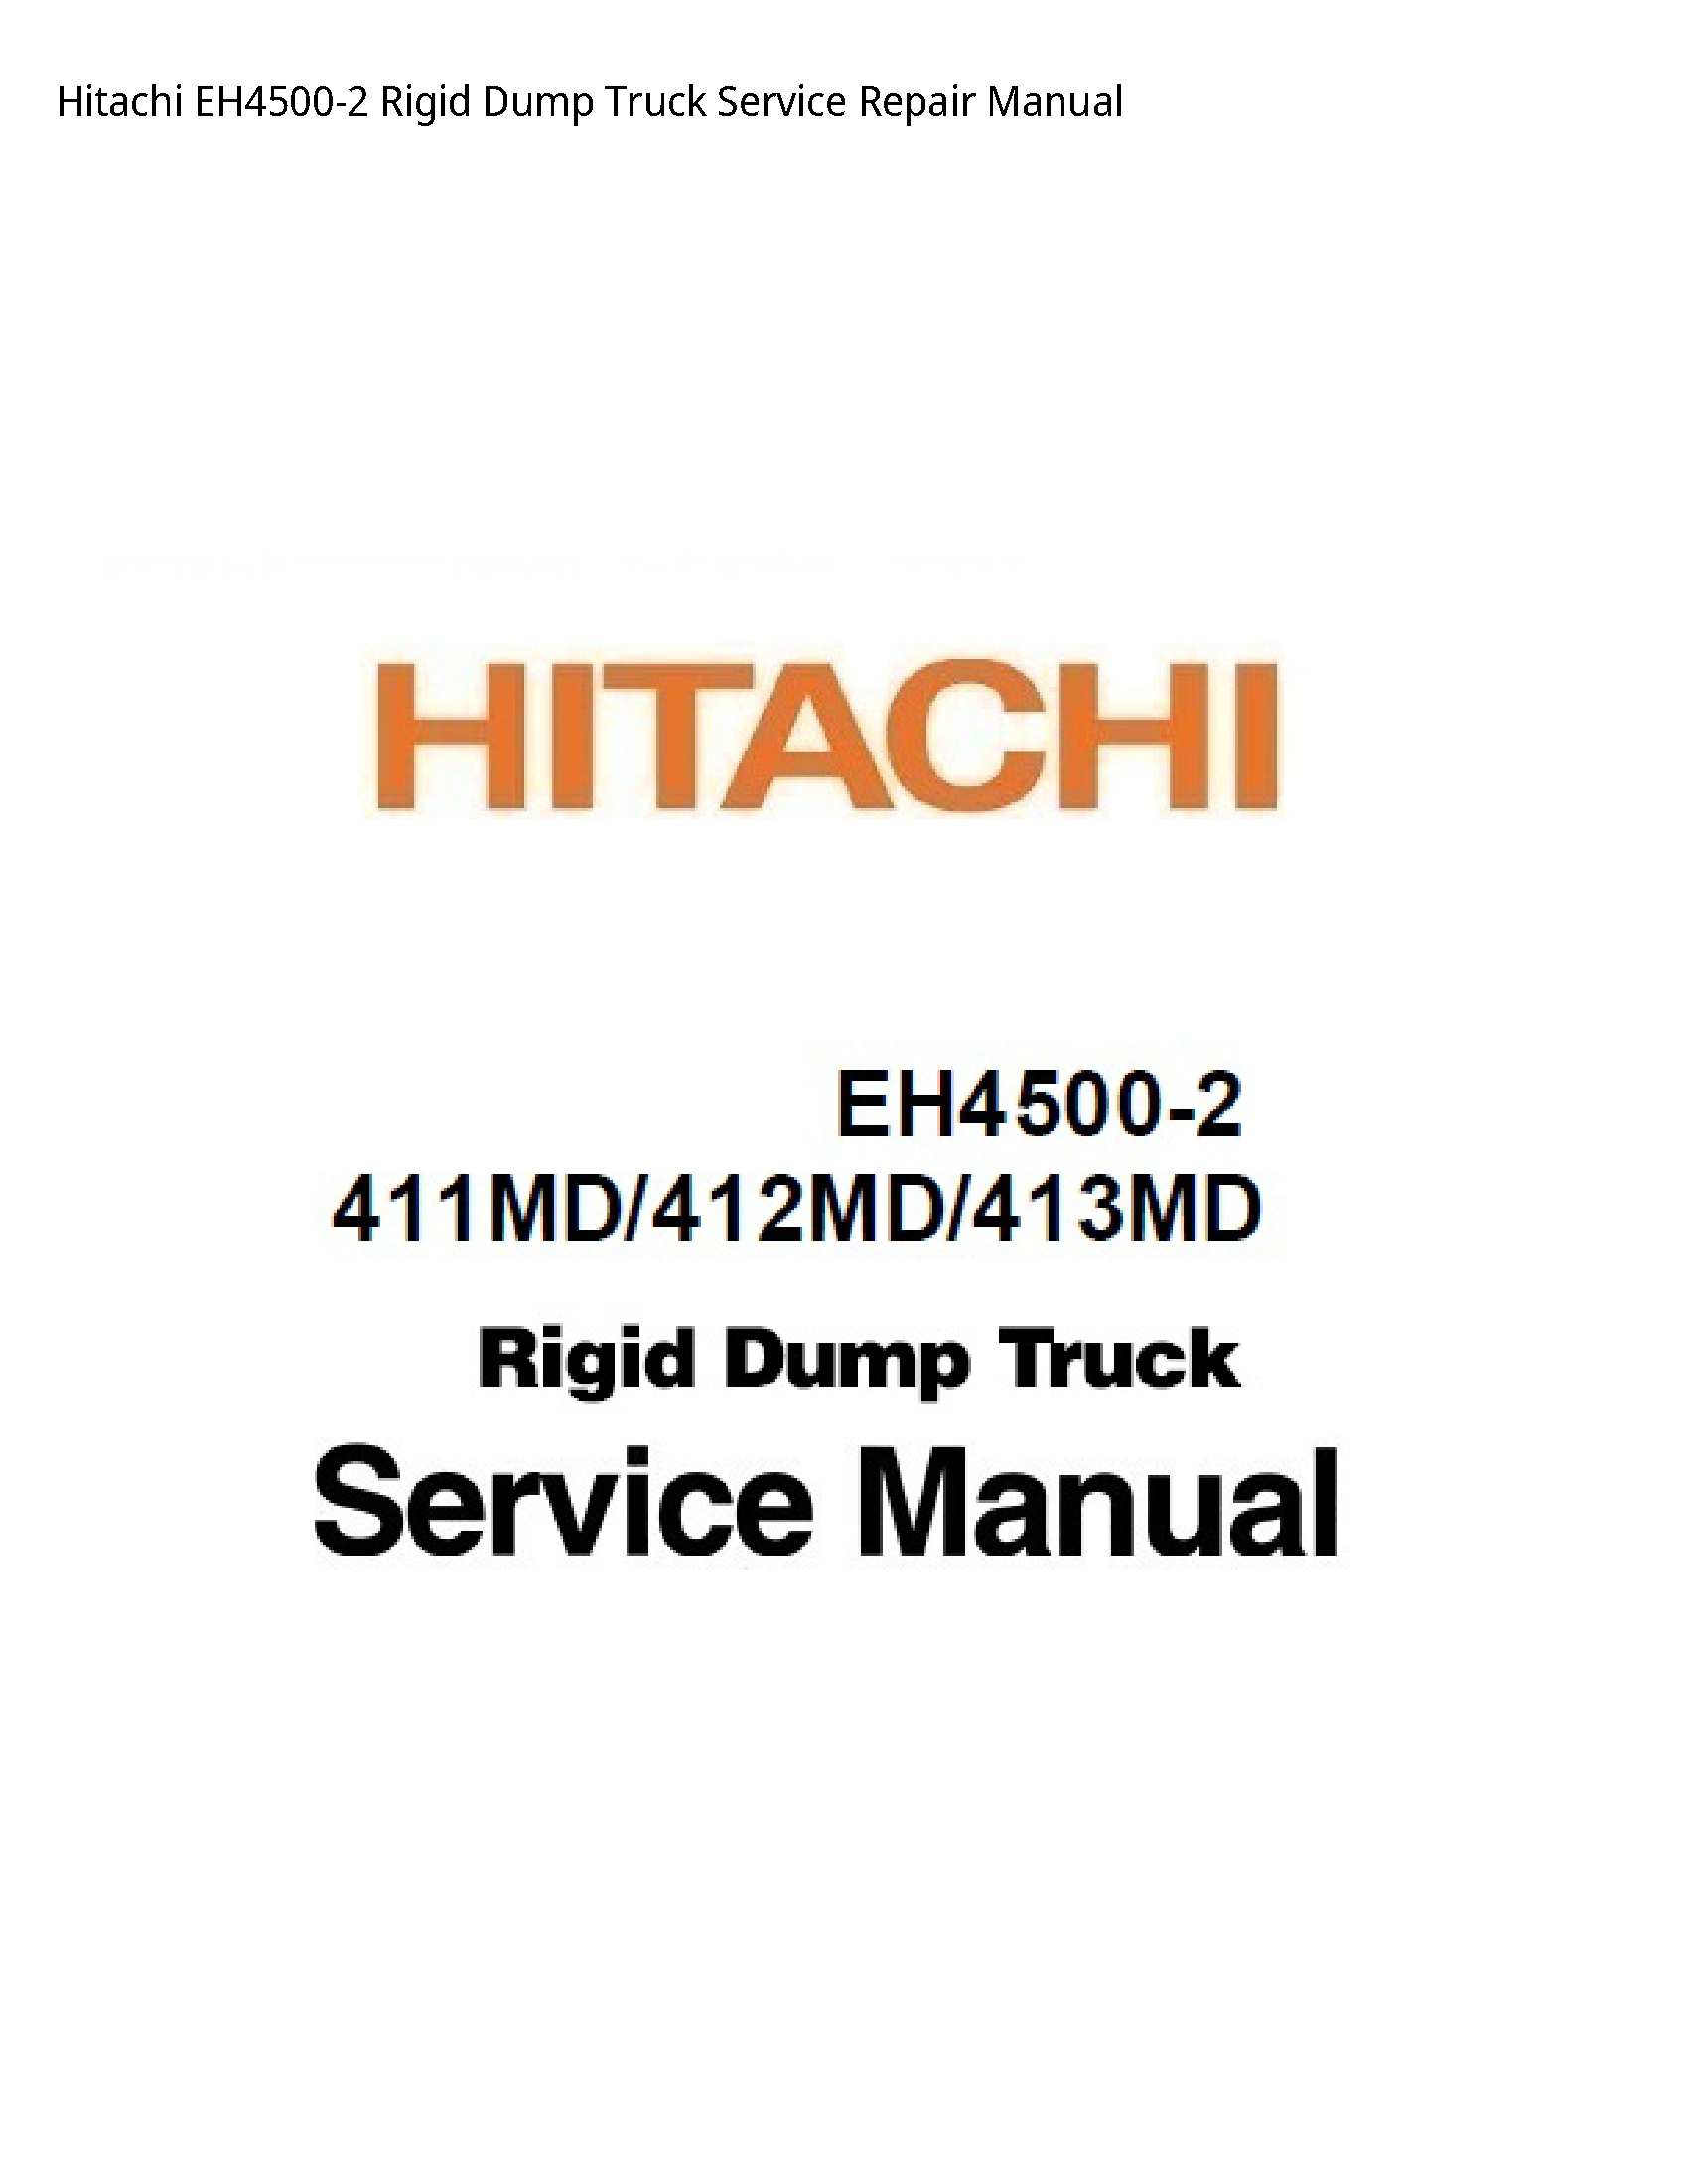 Hitachi EH4500-2 Rigid Dump Truck manual